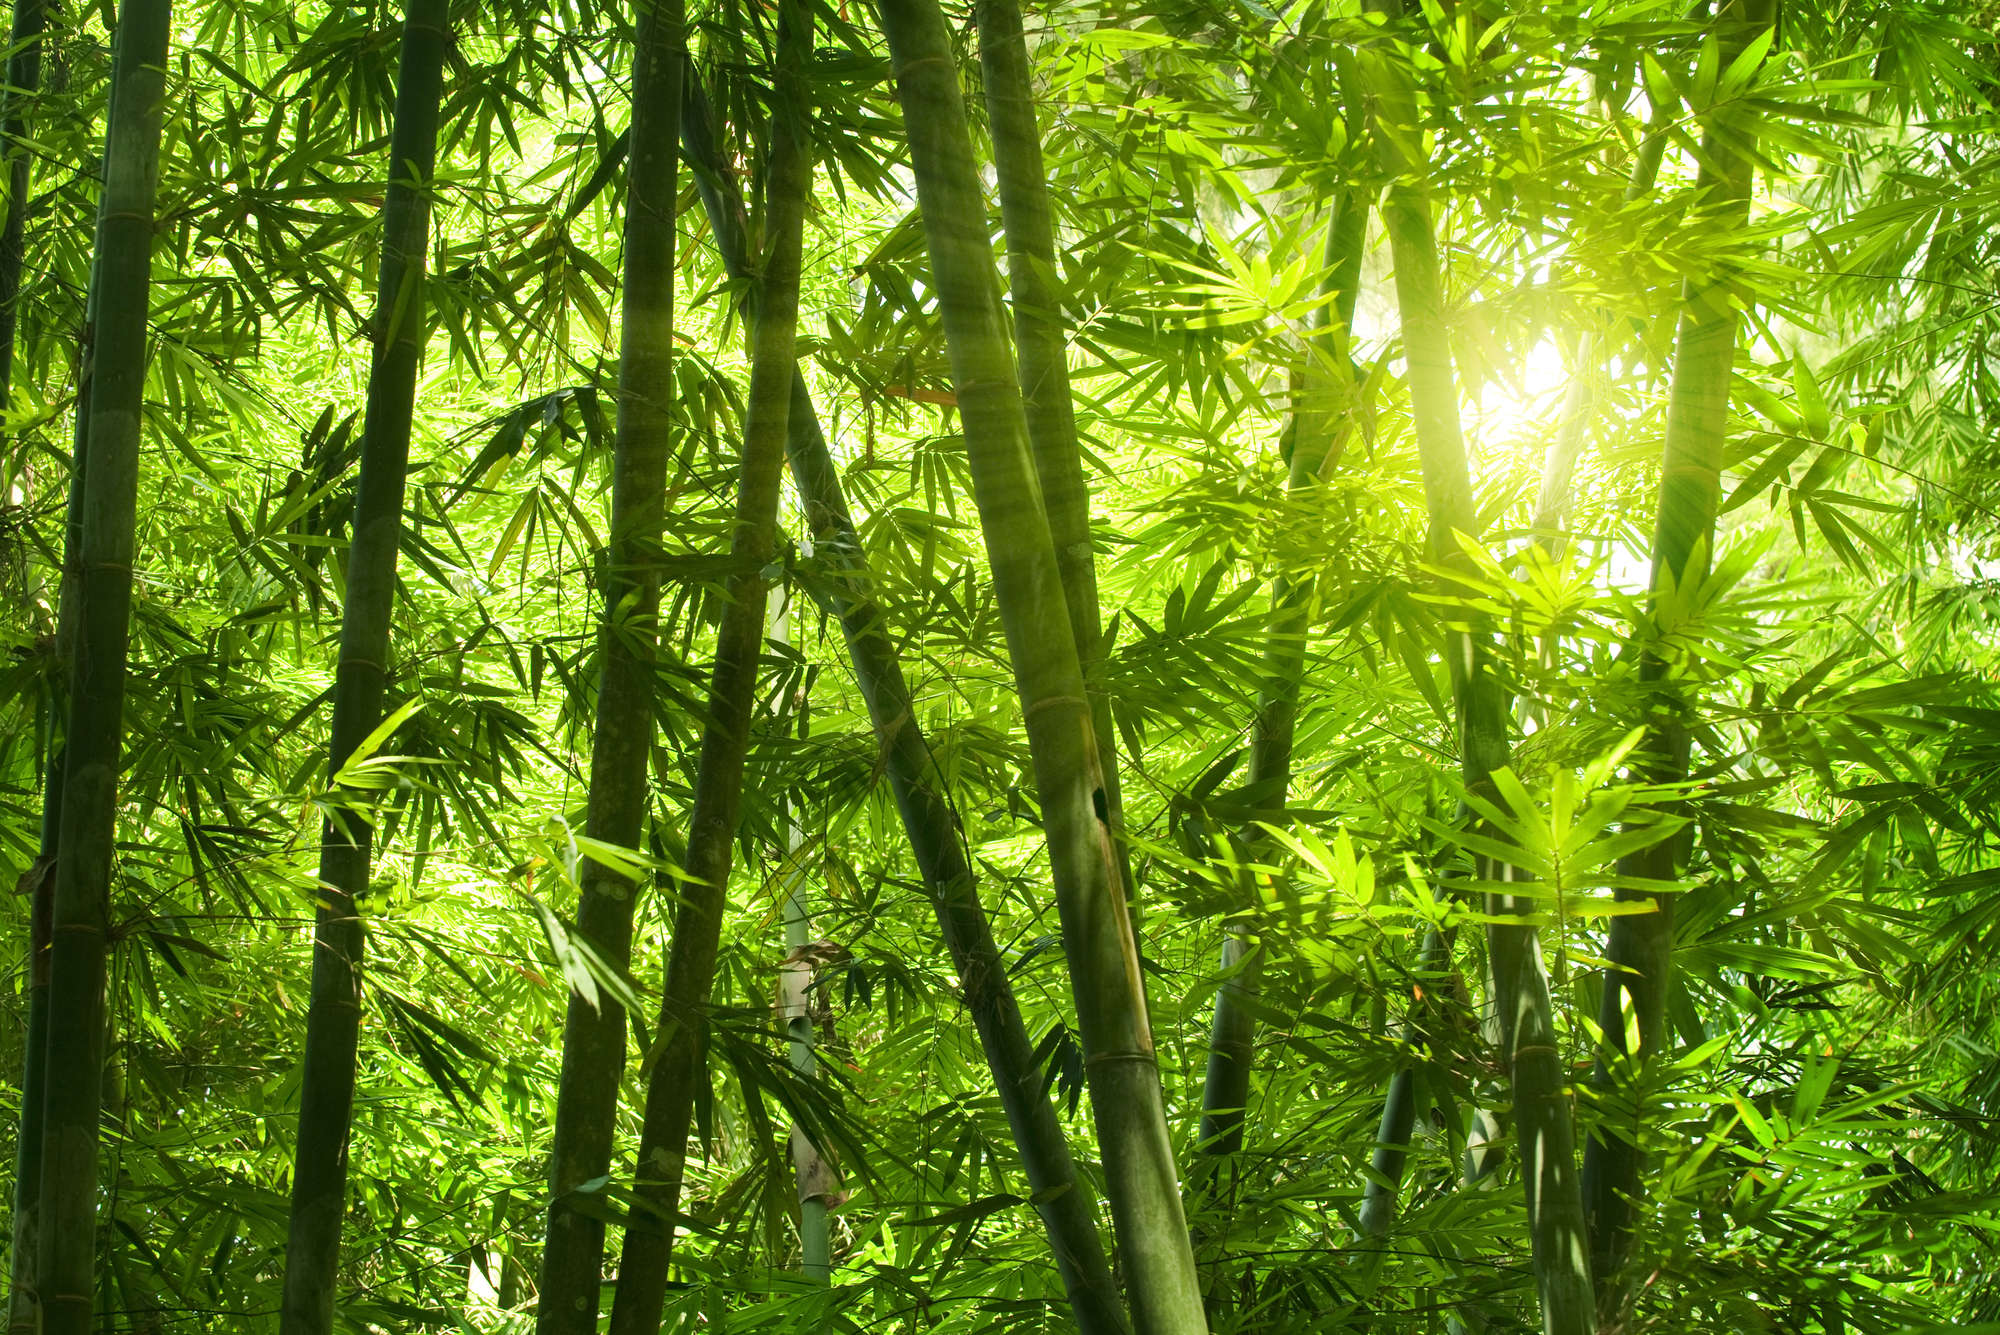             Fototapete Bambus und Blätter – Perlmutt Glattvlies
        